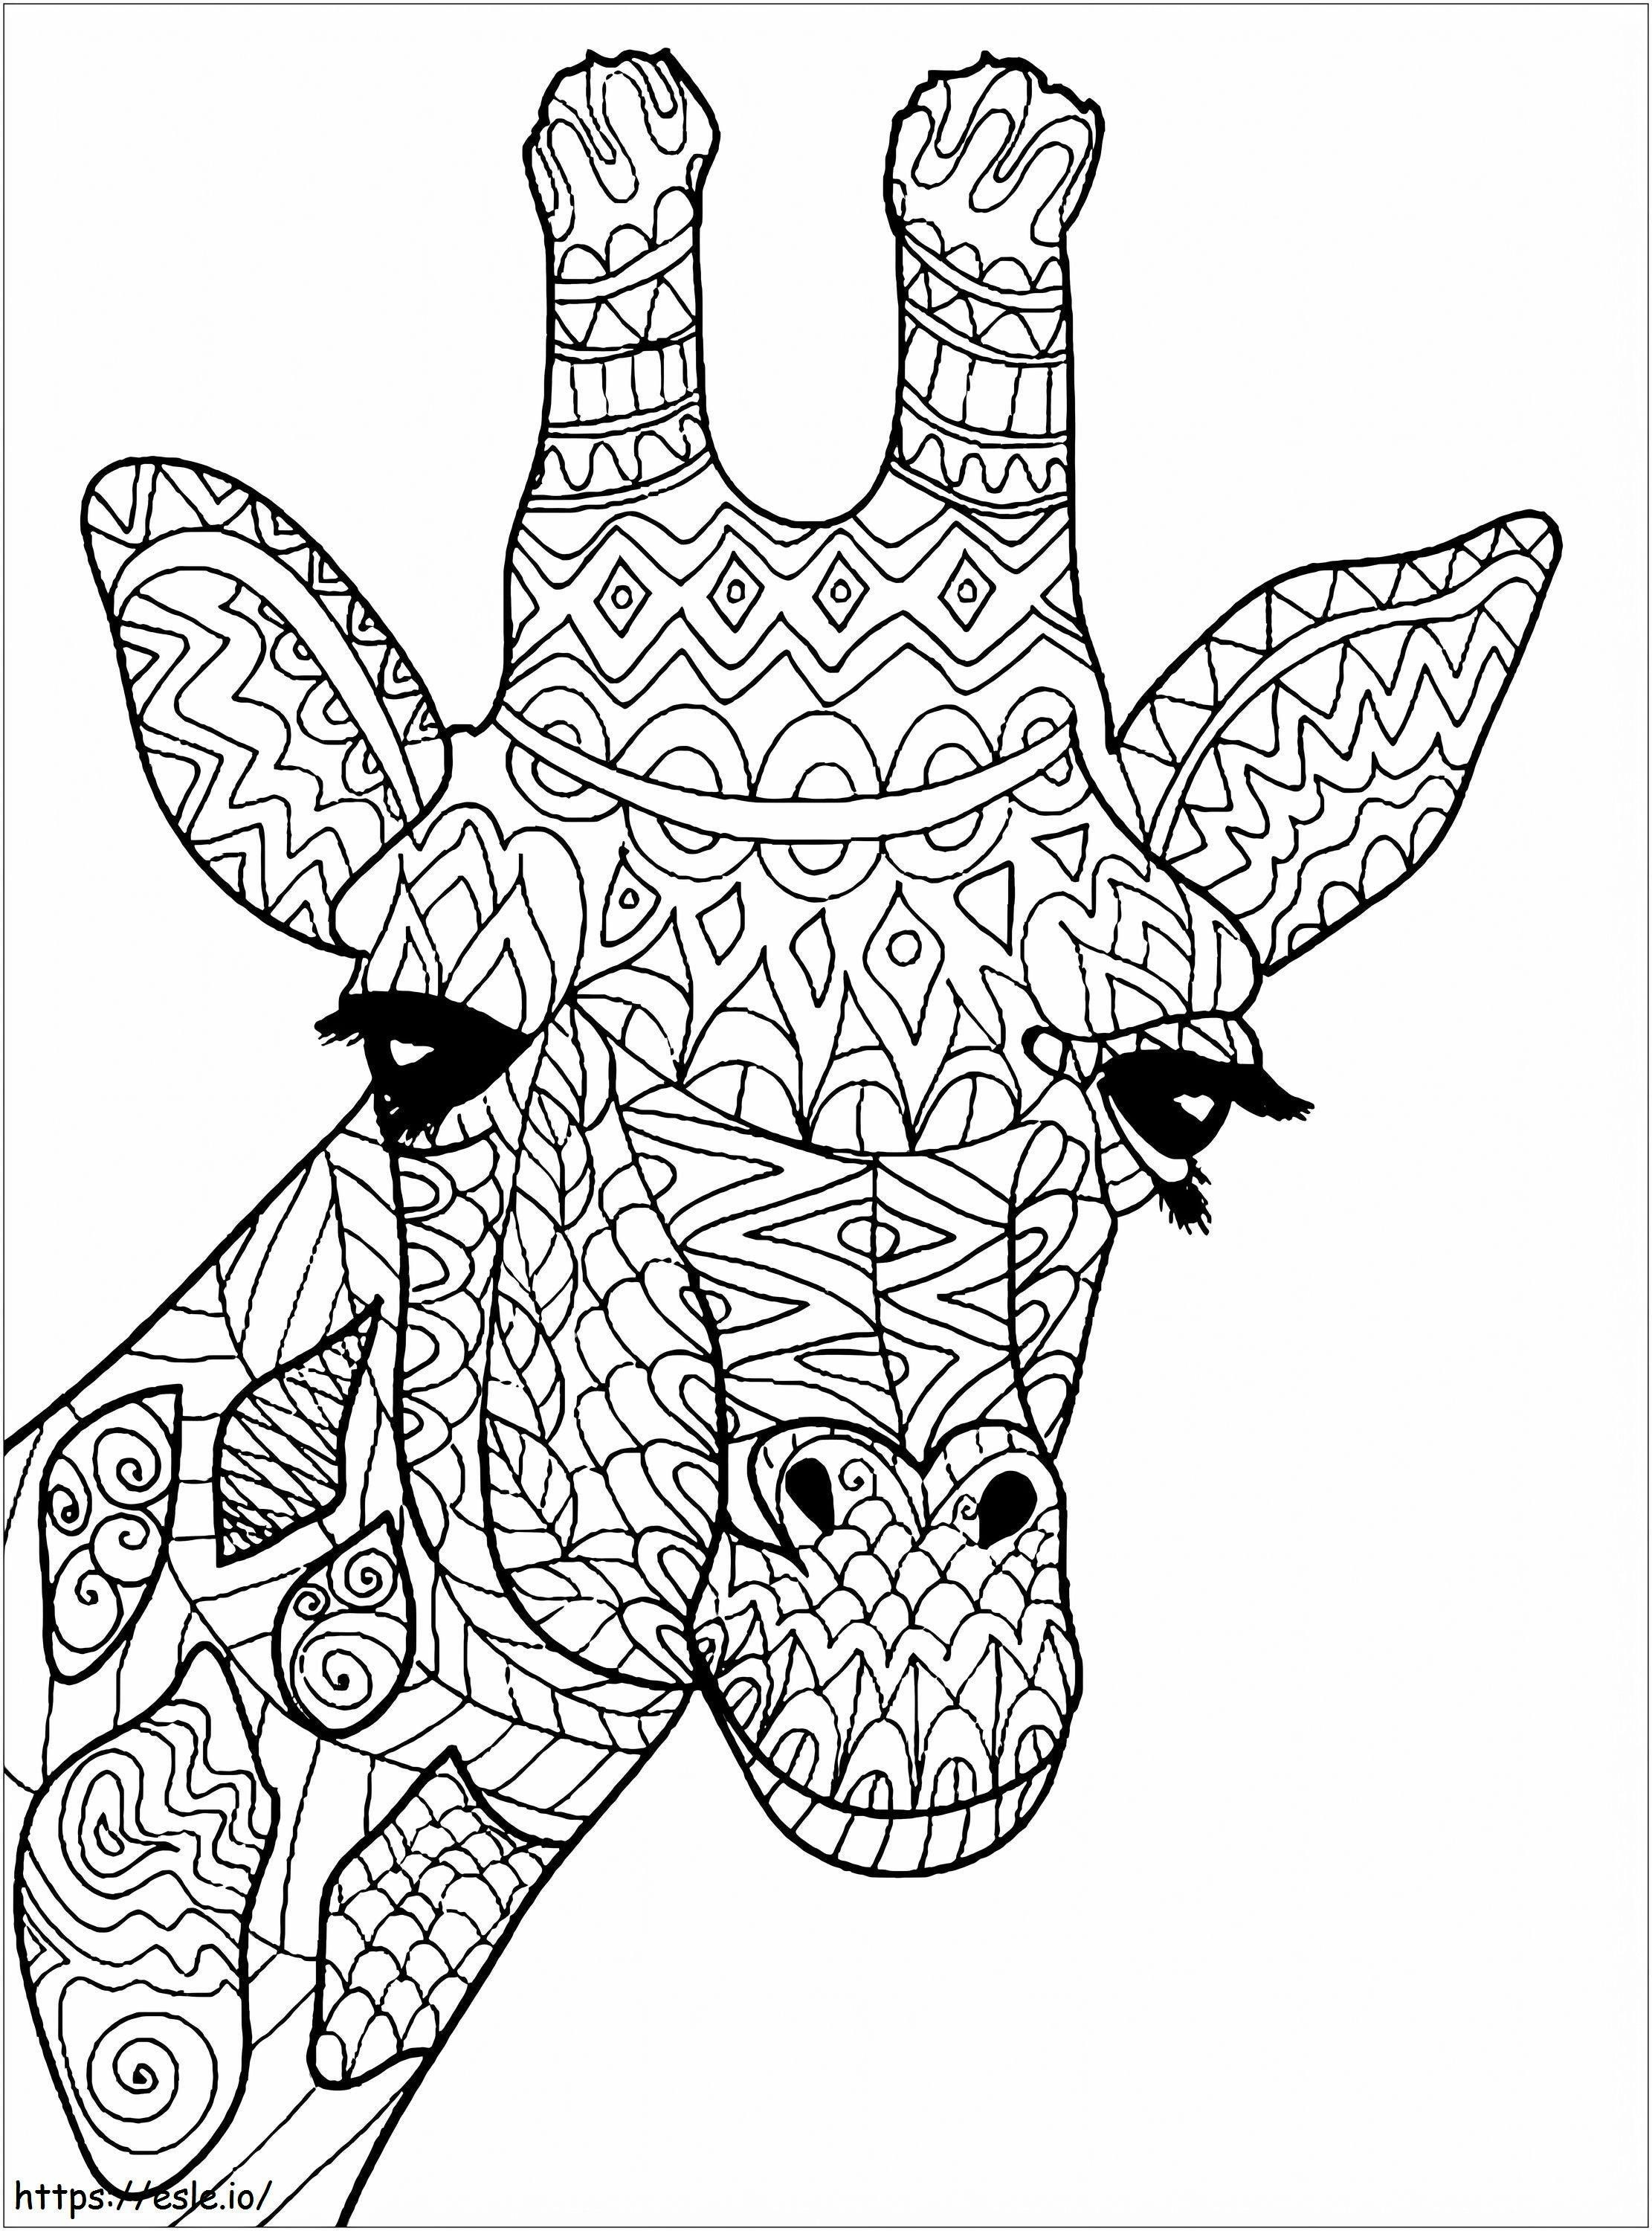 Giraffenkopf-Mandala ausmalbilder